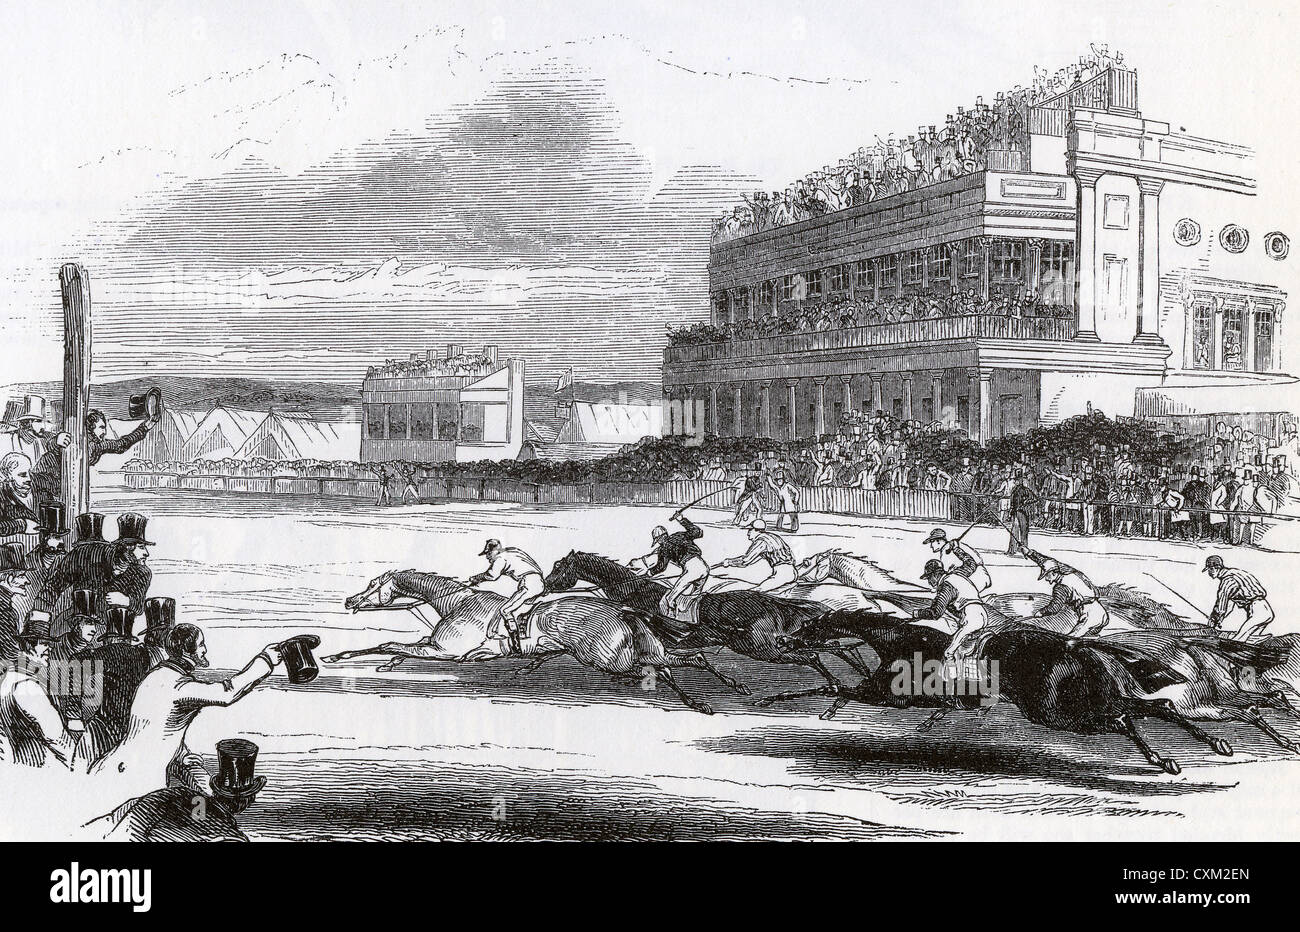 ASCOT RACES 1846 Stock Photo